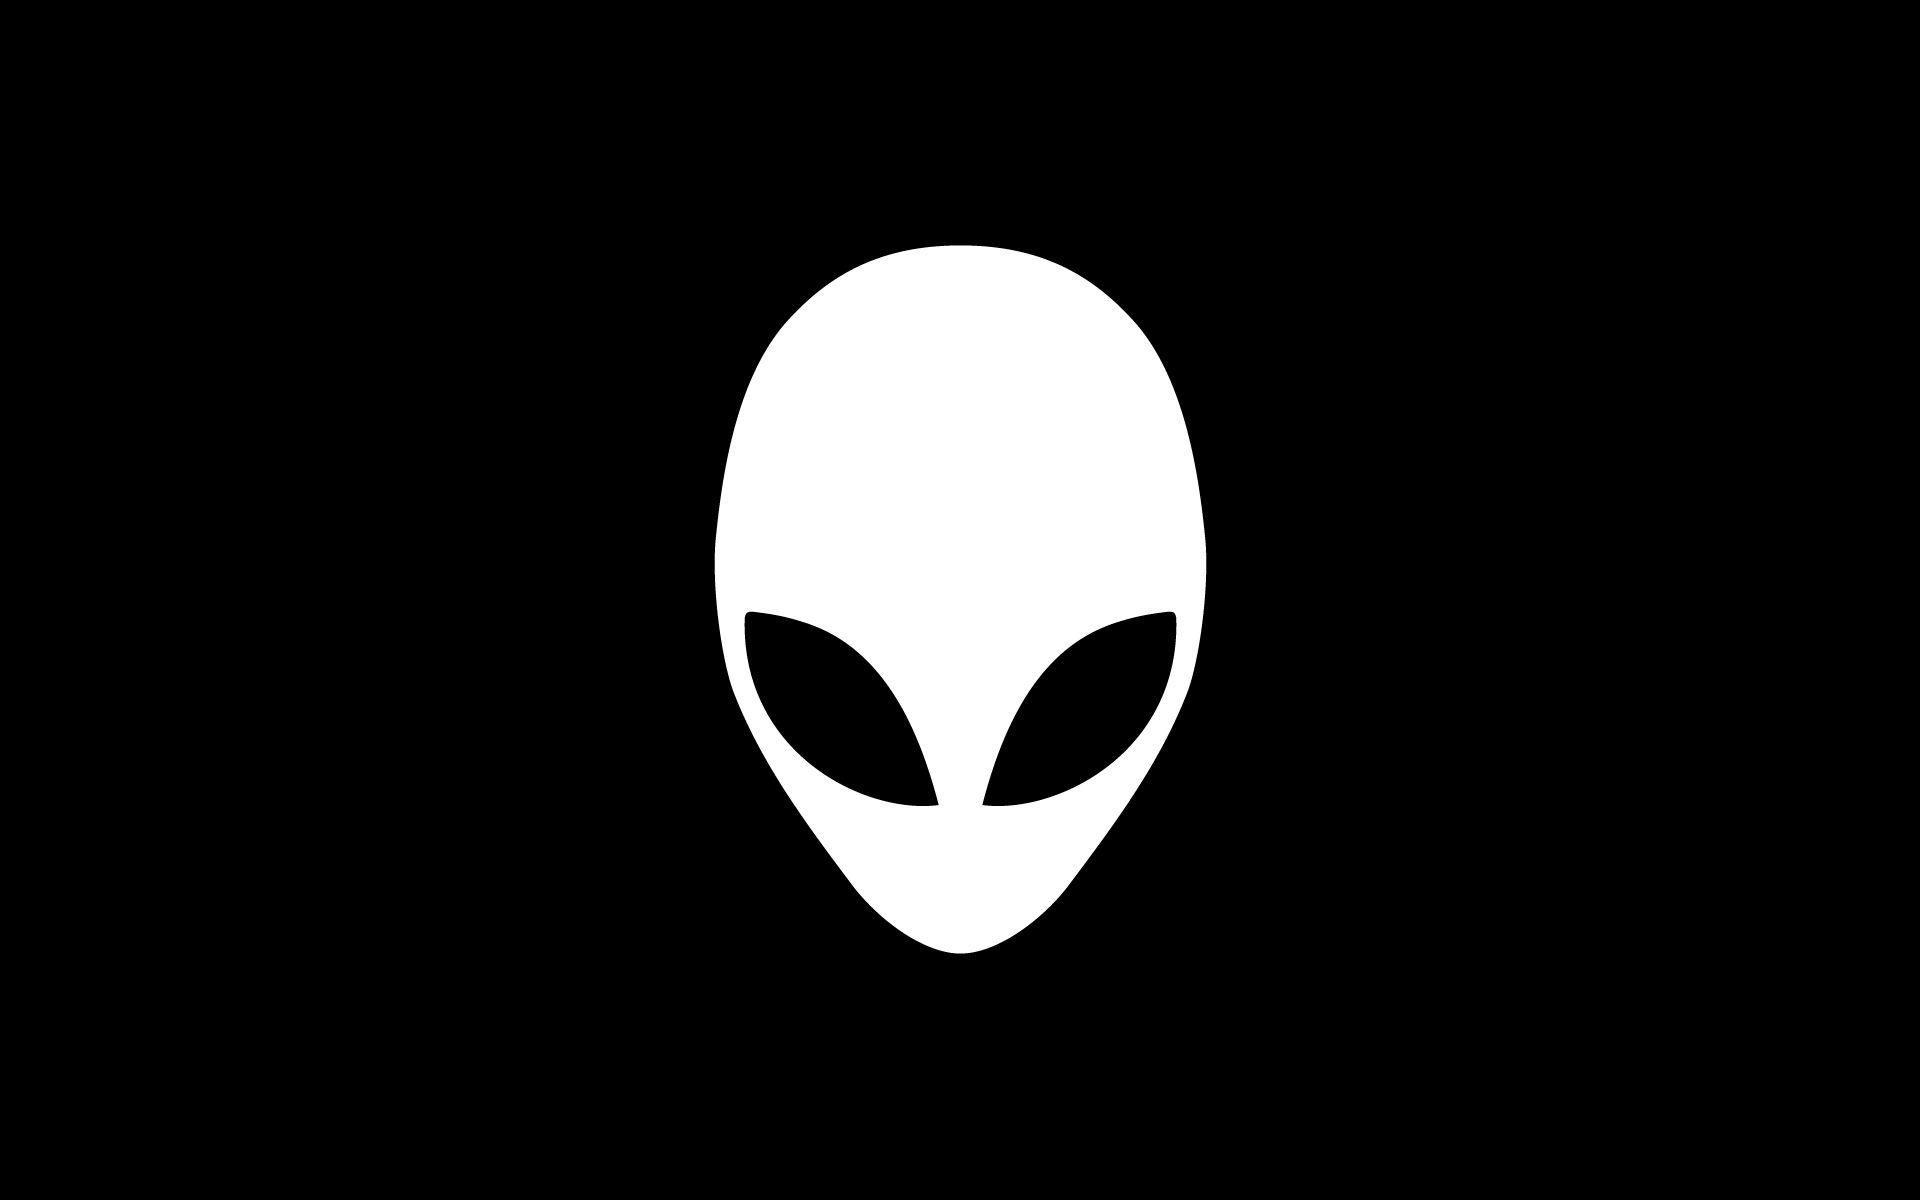 Grey Alien Logo - Alienware Grey Alien On Black Background